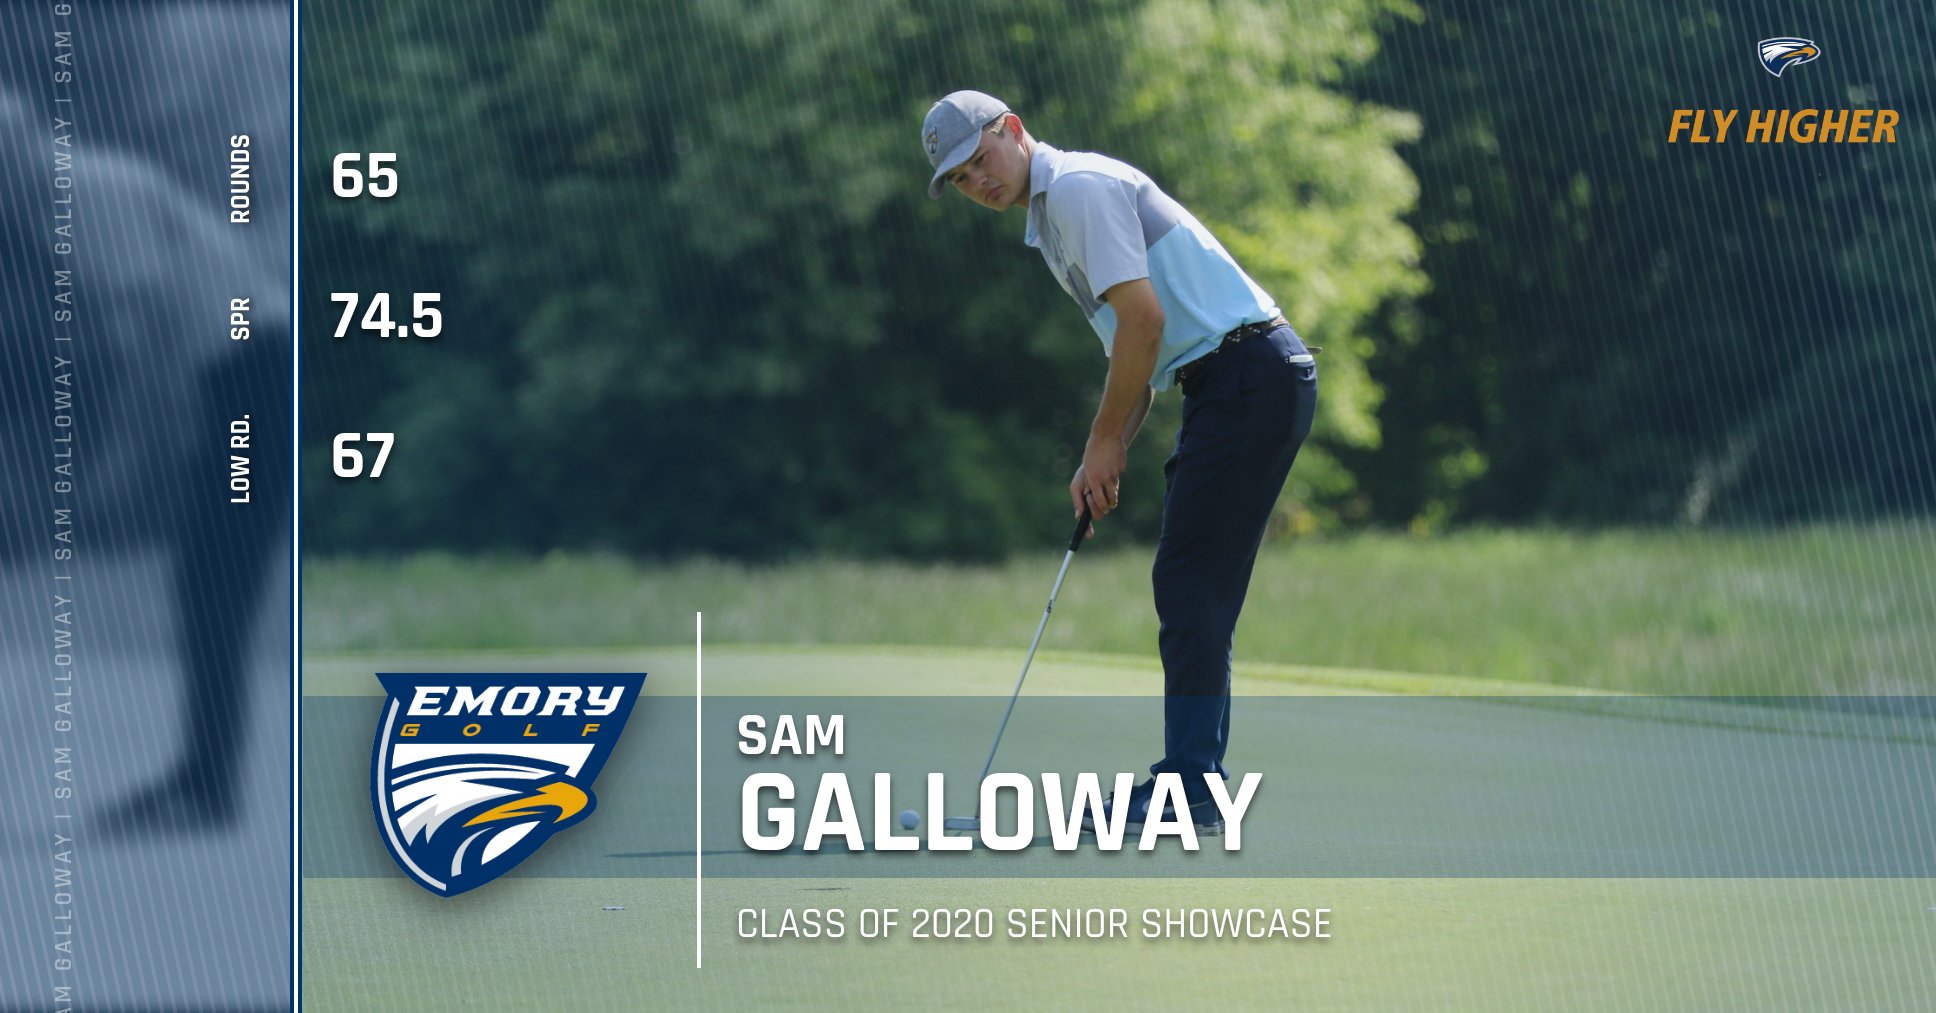 Emory Senior Showcase - Sam Galloway